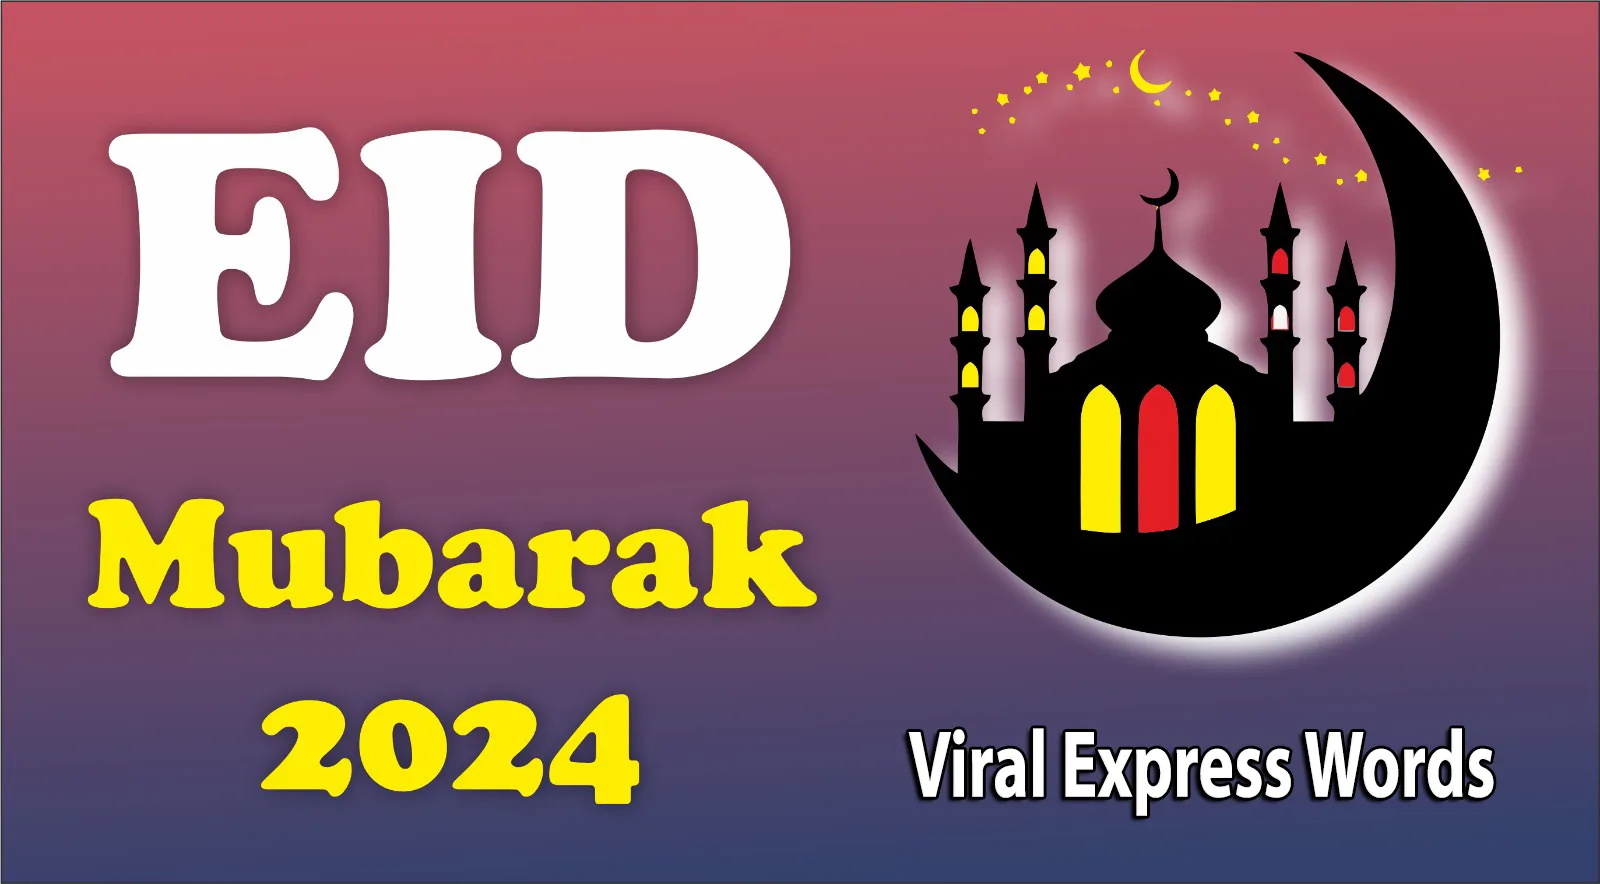 A colorful Eid-ul-Fitr 2024 greeting card